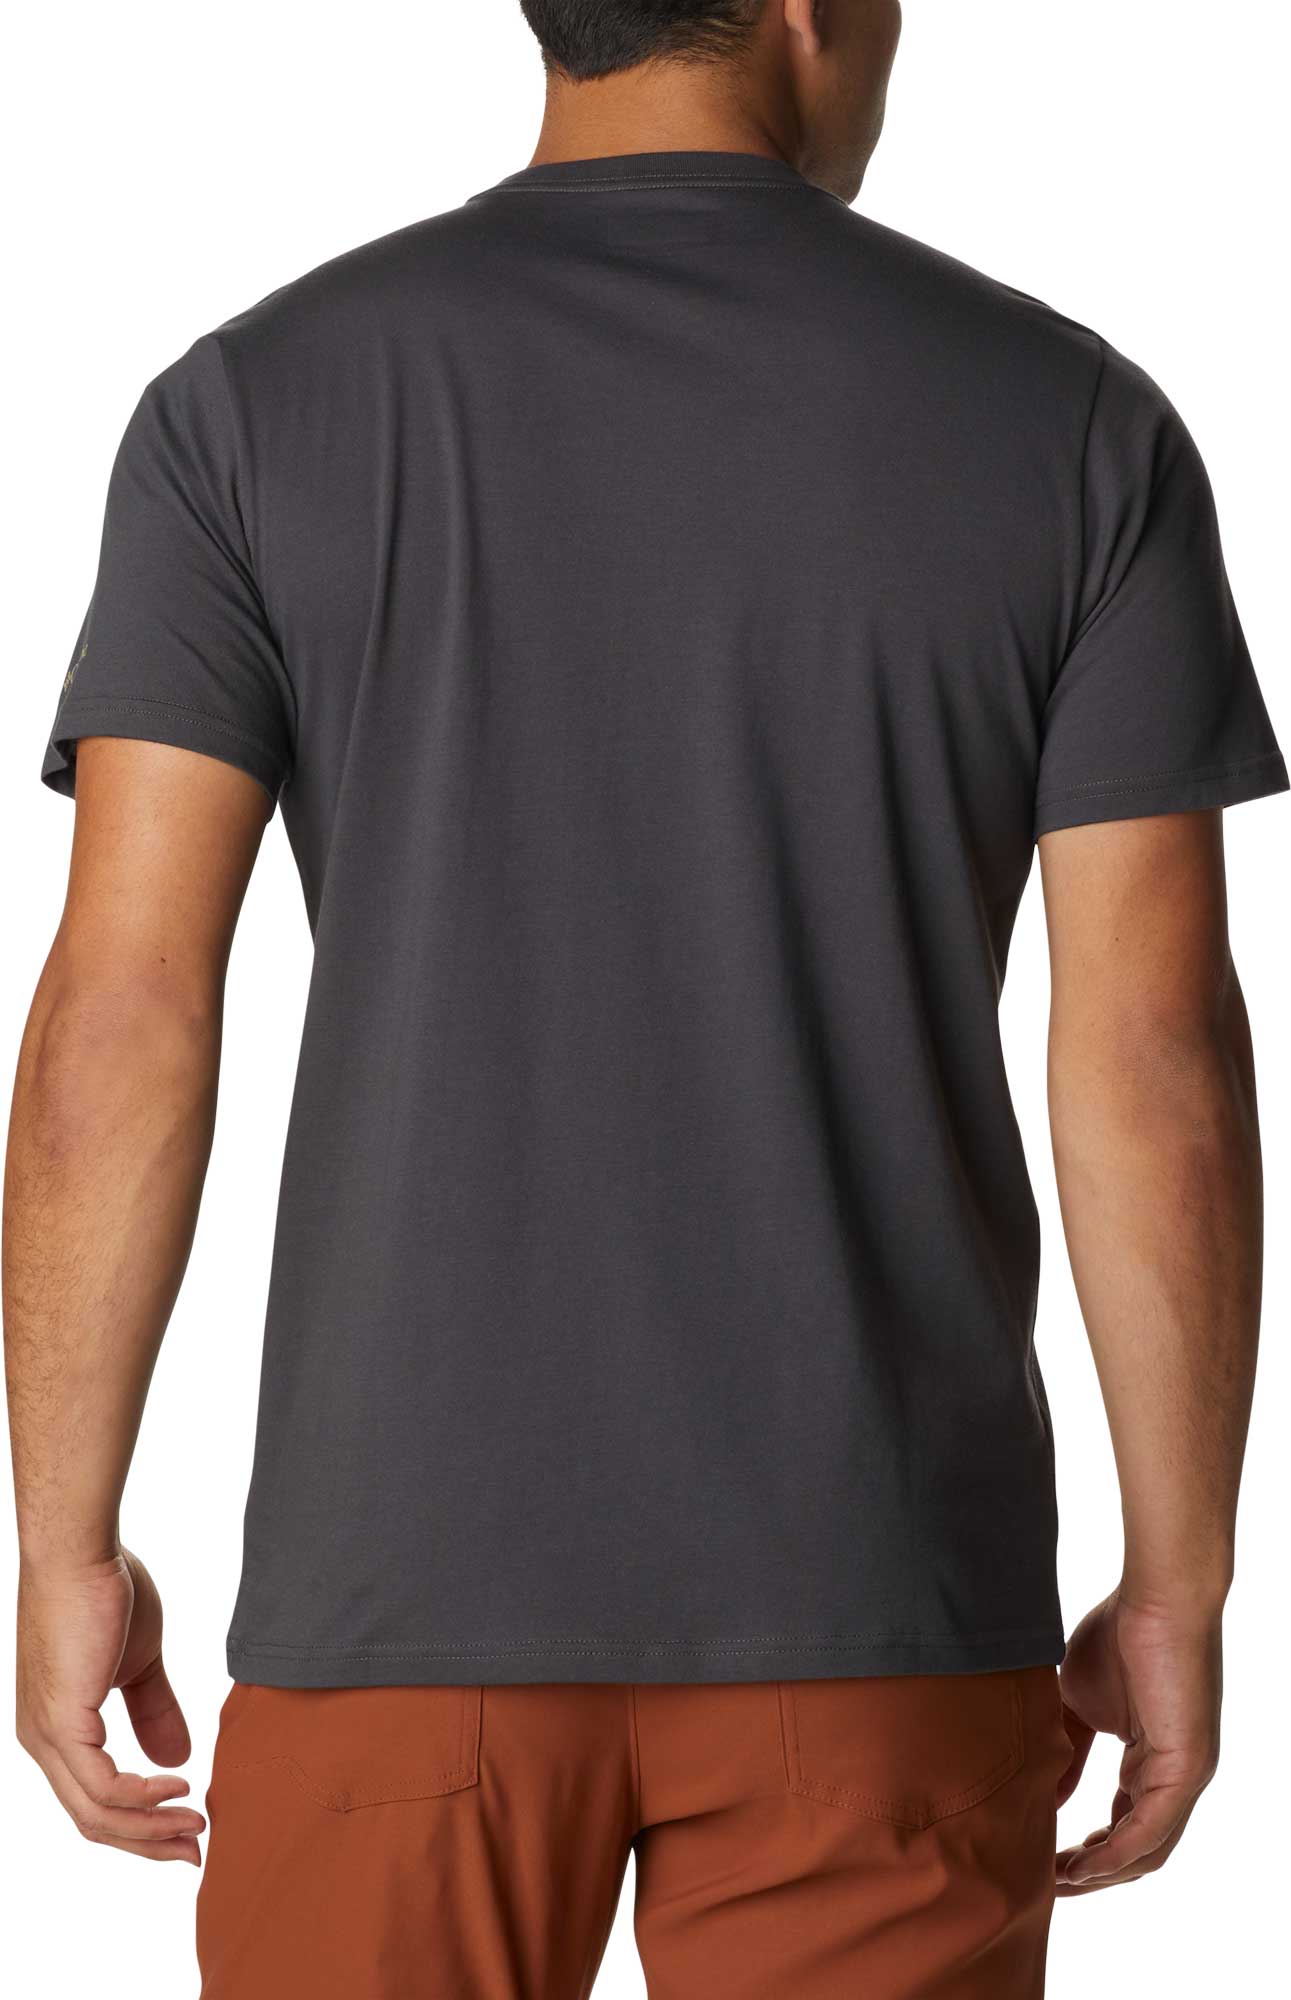 Men's short sleeve T-shirt